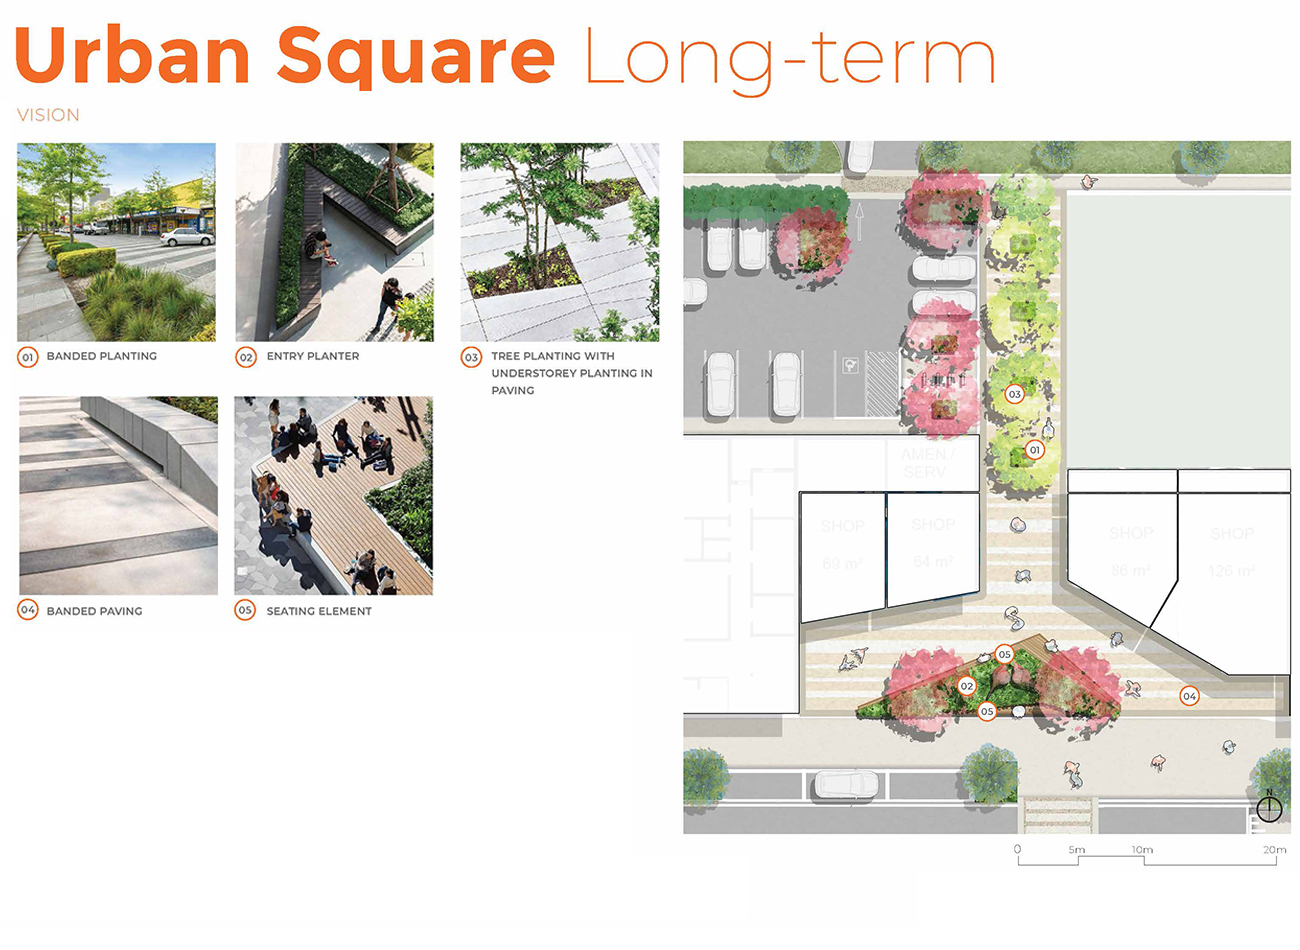 Botanic Ridge Town Planning Mesh Landscape Architecture Long Term